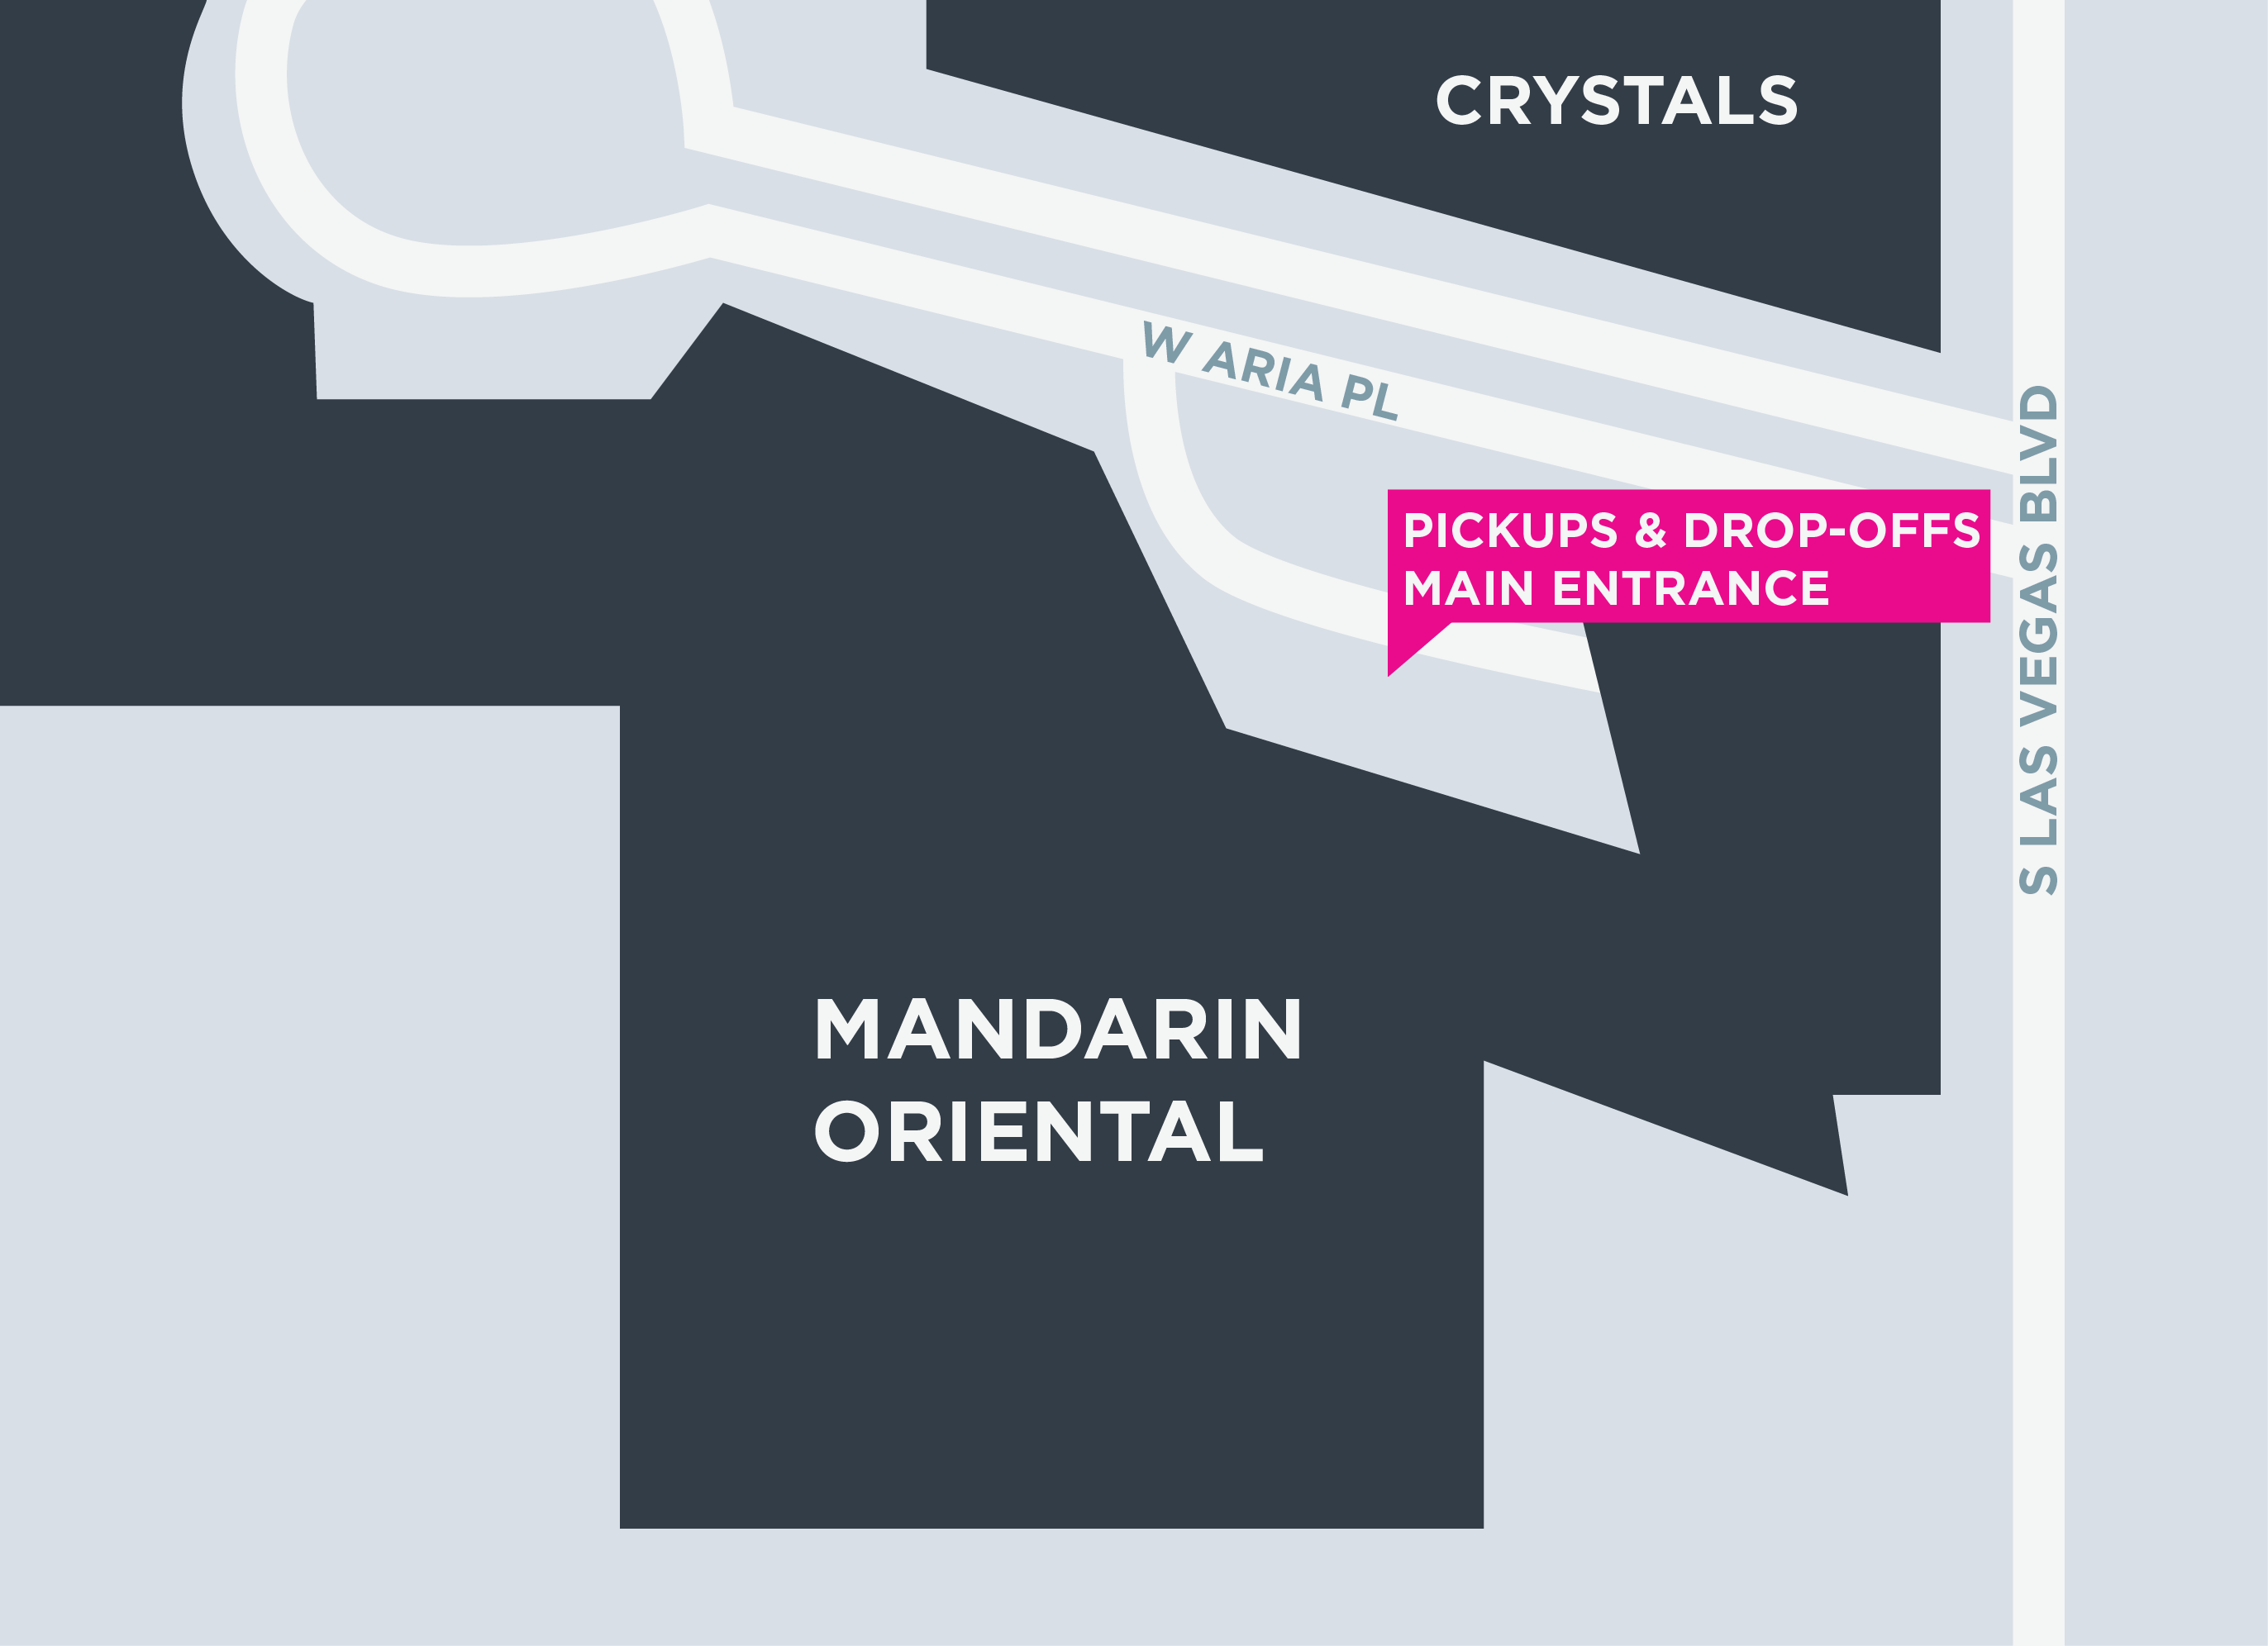 Esta imagen muestra un mapa del Mandarin Oriental, incluidas las áreas para recoger y dejar pasajeros.